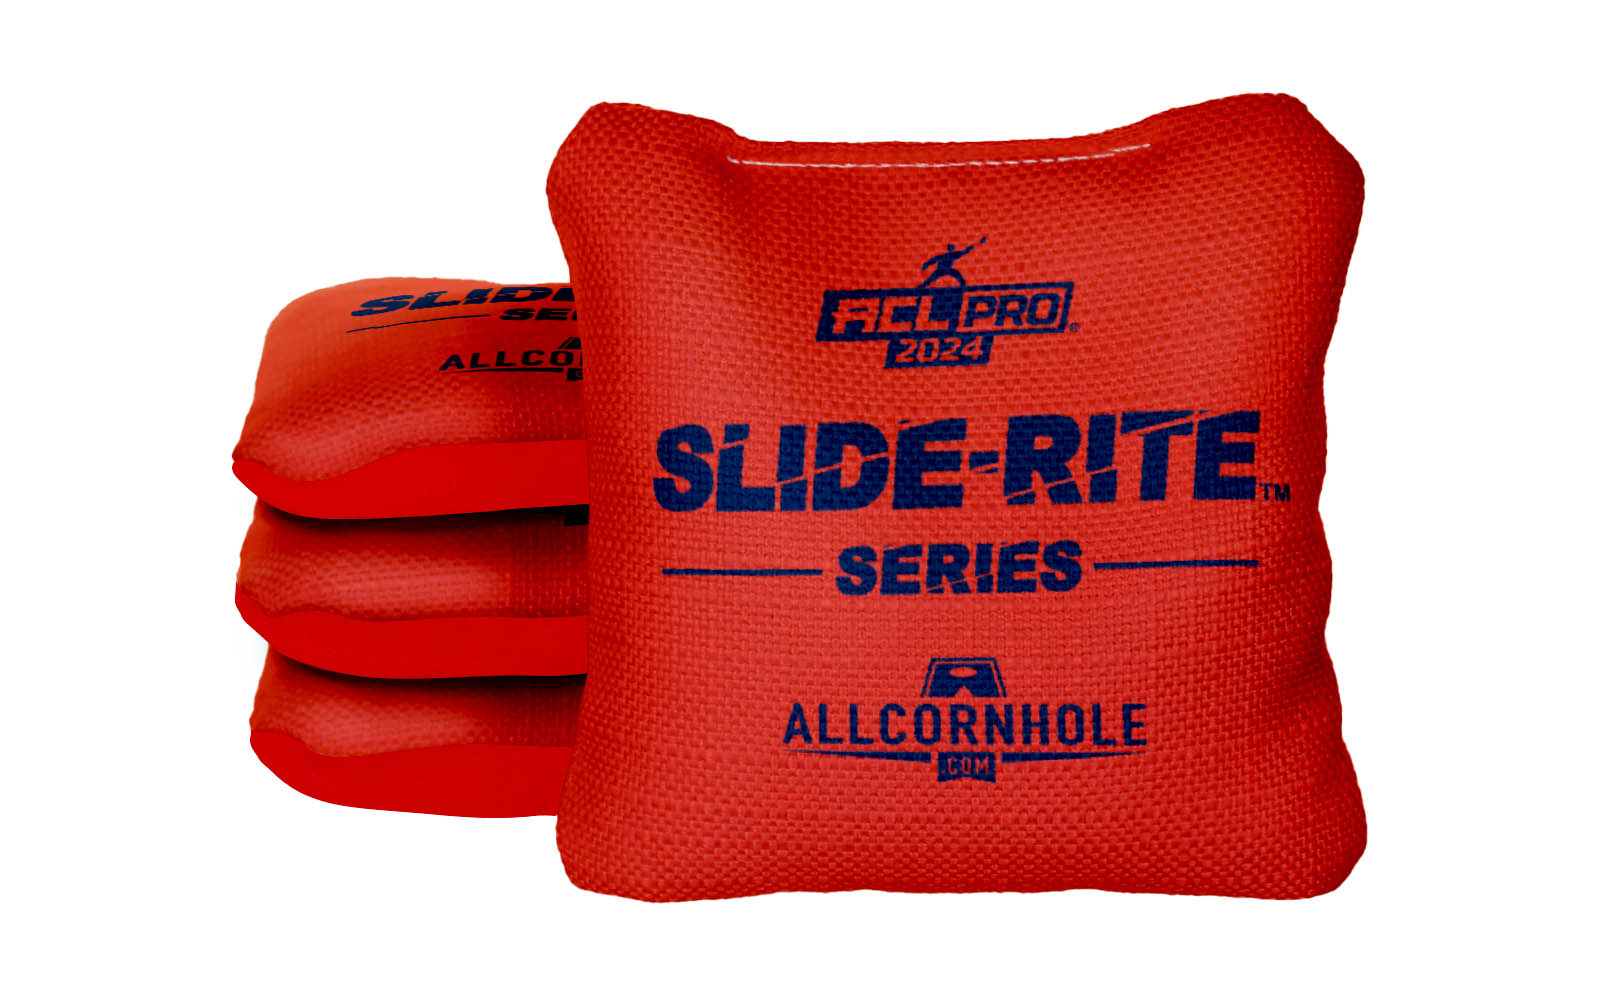 Officially Licensed Collegiate Cornhole Bags - AllCornhole Slide Rite - Set of 4 - University of Illinois